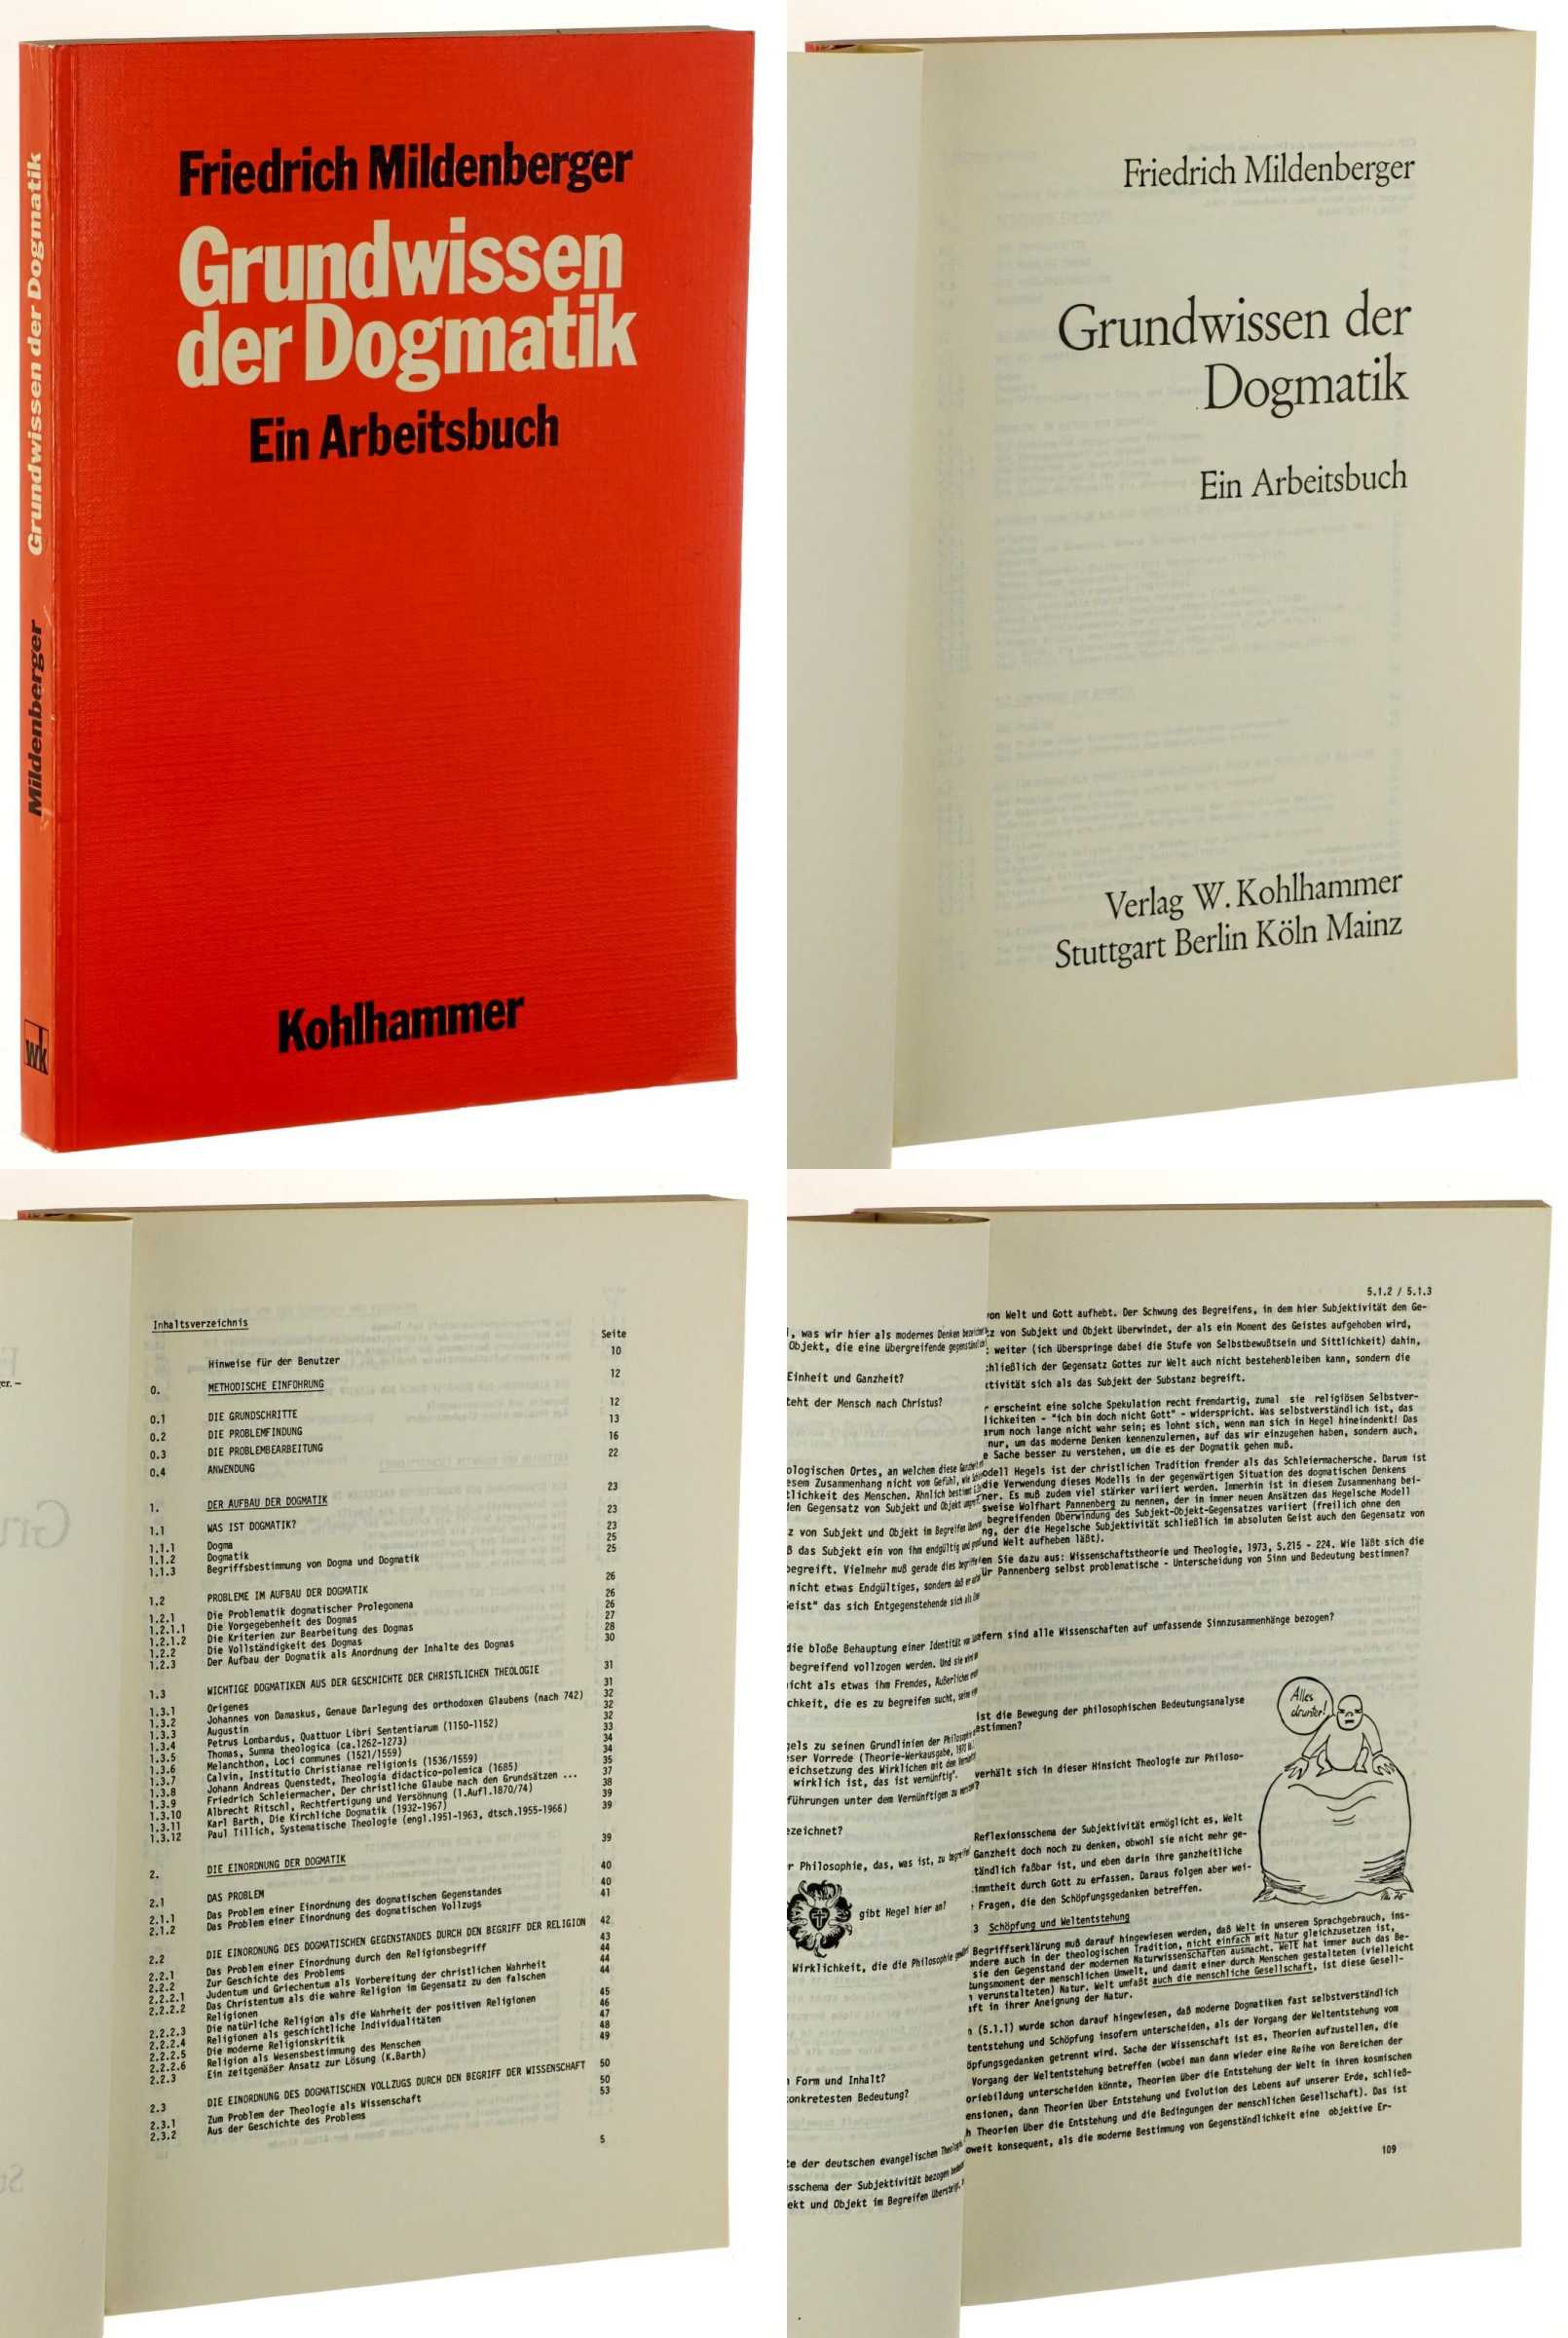 Mildenberger, Friedrich:  Grundwissen der Dogmatik. ein Arbeitsbuch. 